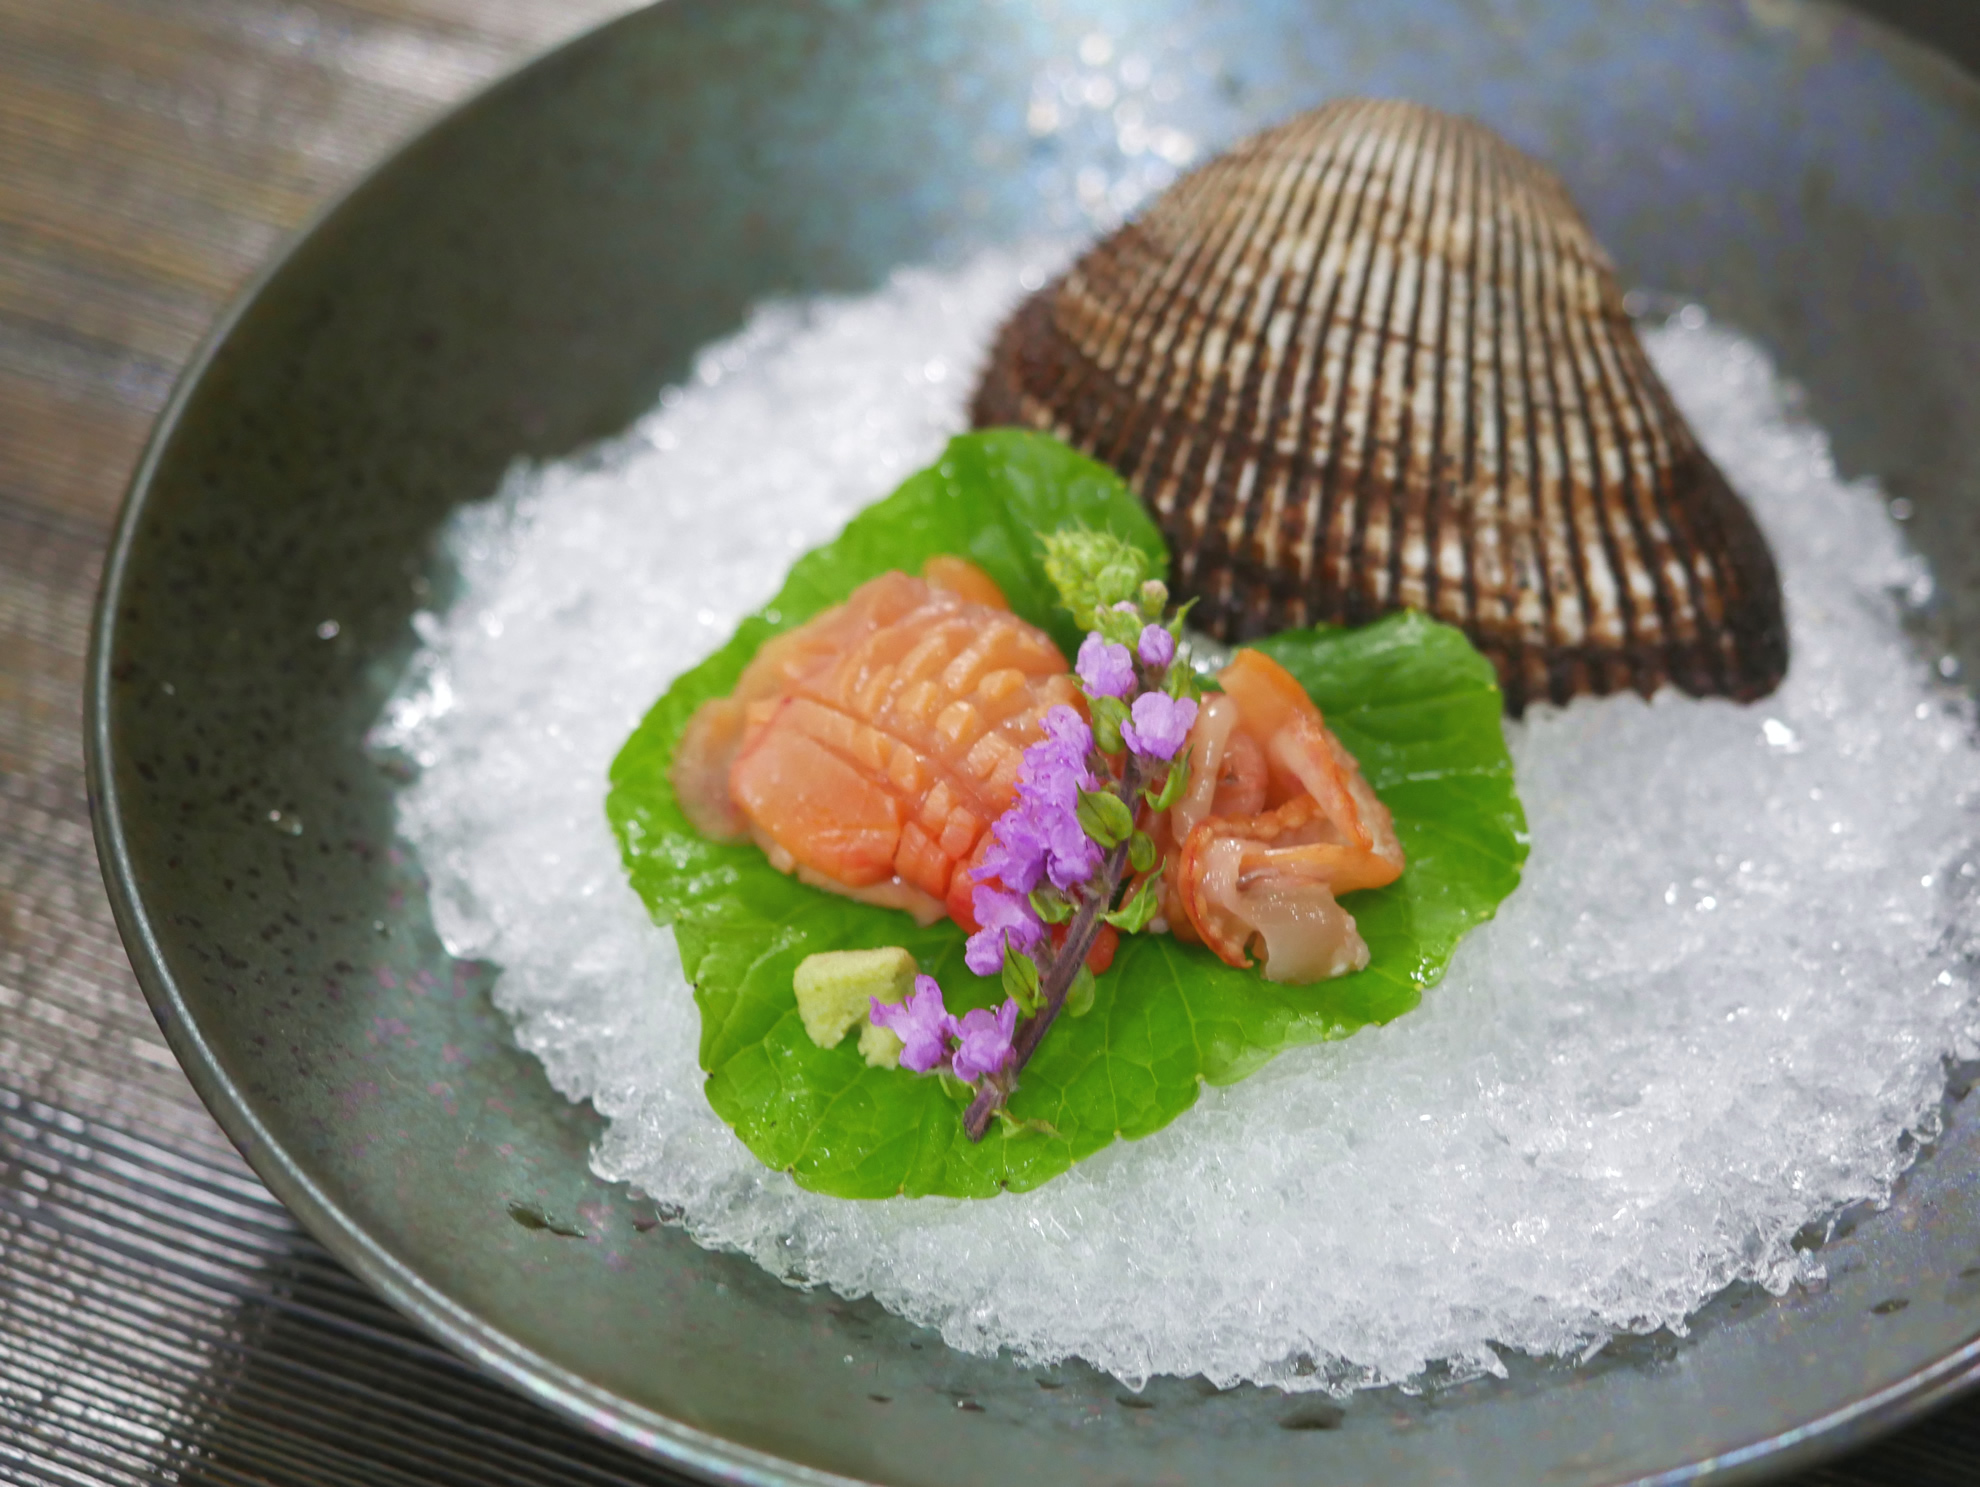 赤貝のさばき方とマグロ 真鯛の刺身 三点盛りの盛り付け方 田中ケンのプロが作る簡単レシピ集と料理の作り方 ケンズキッチン